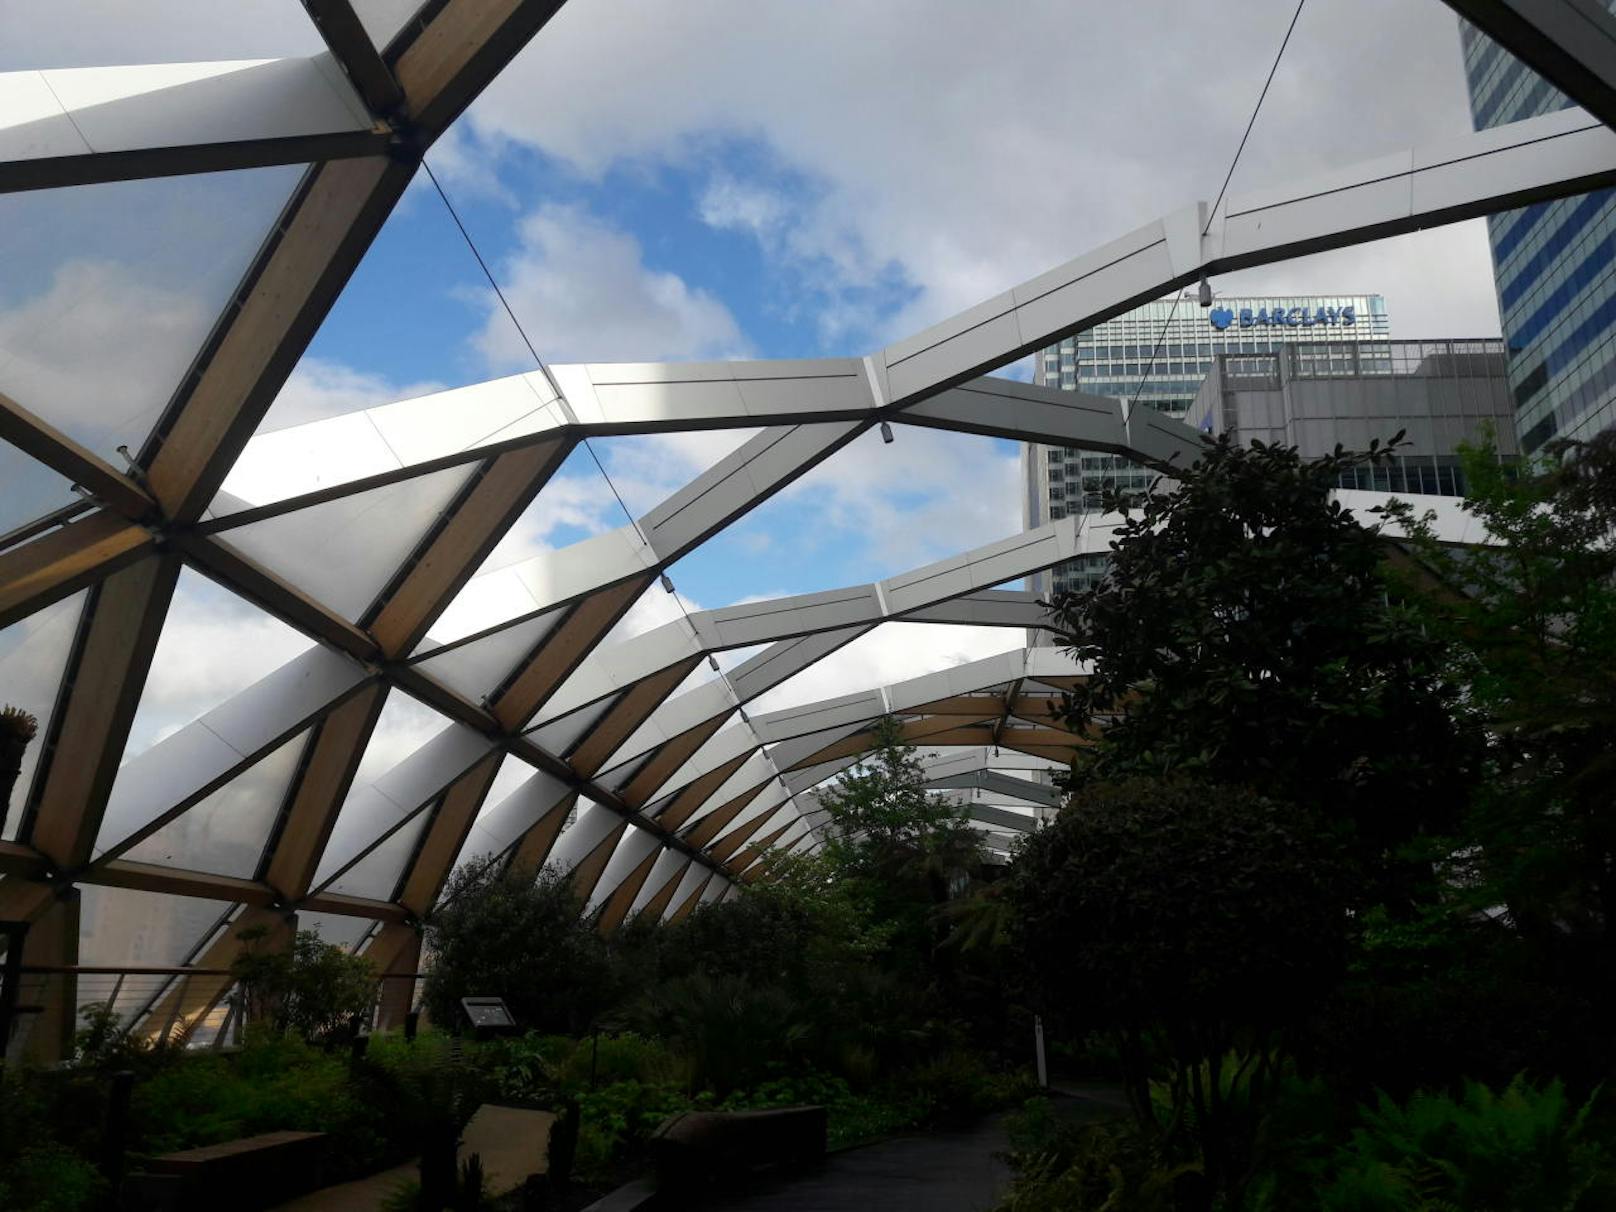 Der Bau der Canary Wharf Station zieht sich über 300 Meter. Unter der Dachkontruktion aus OÖ befindet sich eine imposante Gartenanlage.